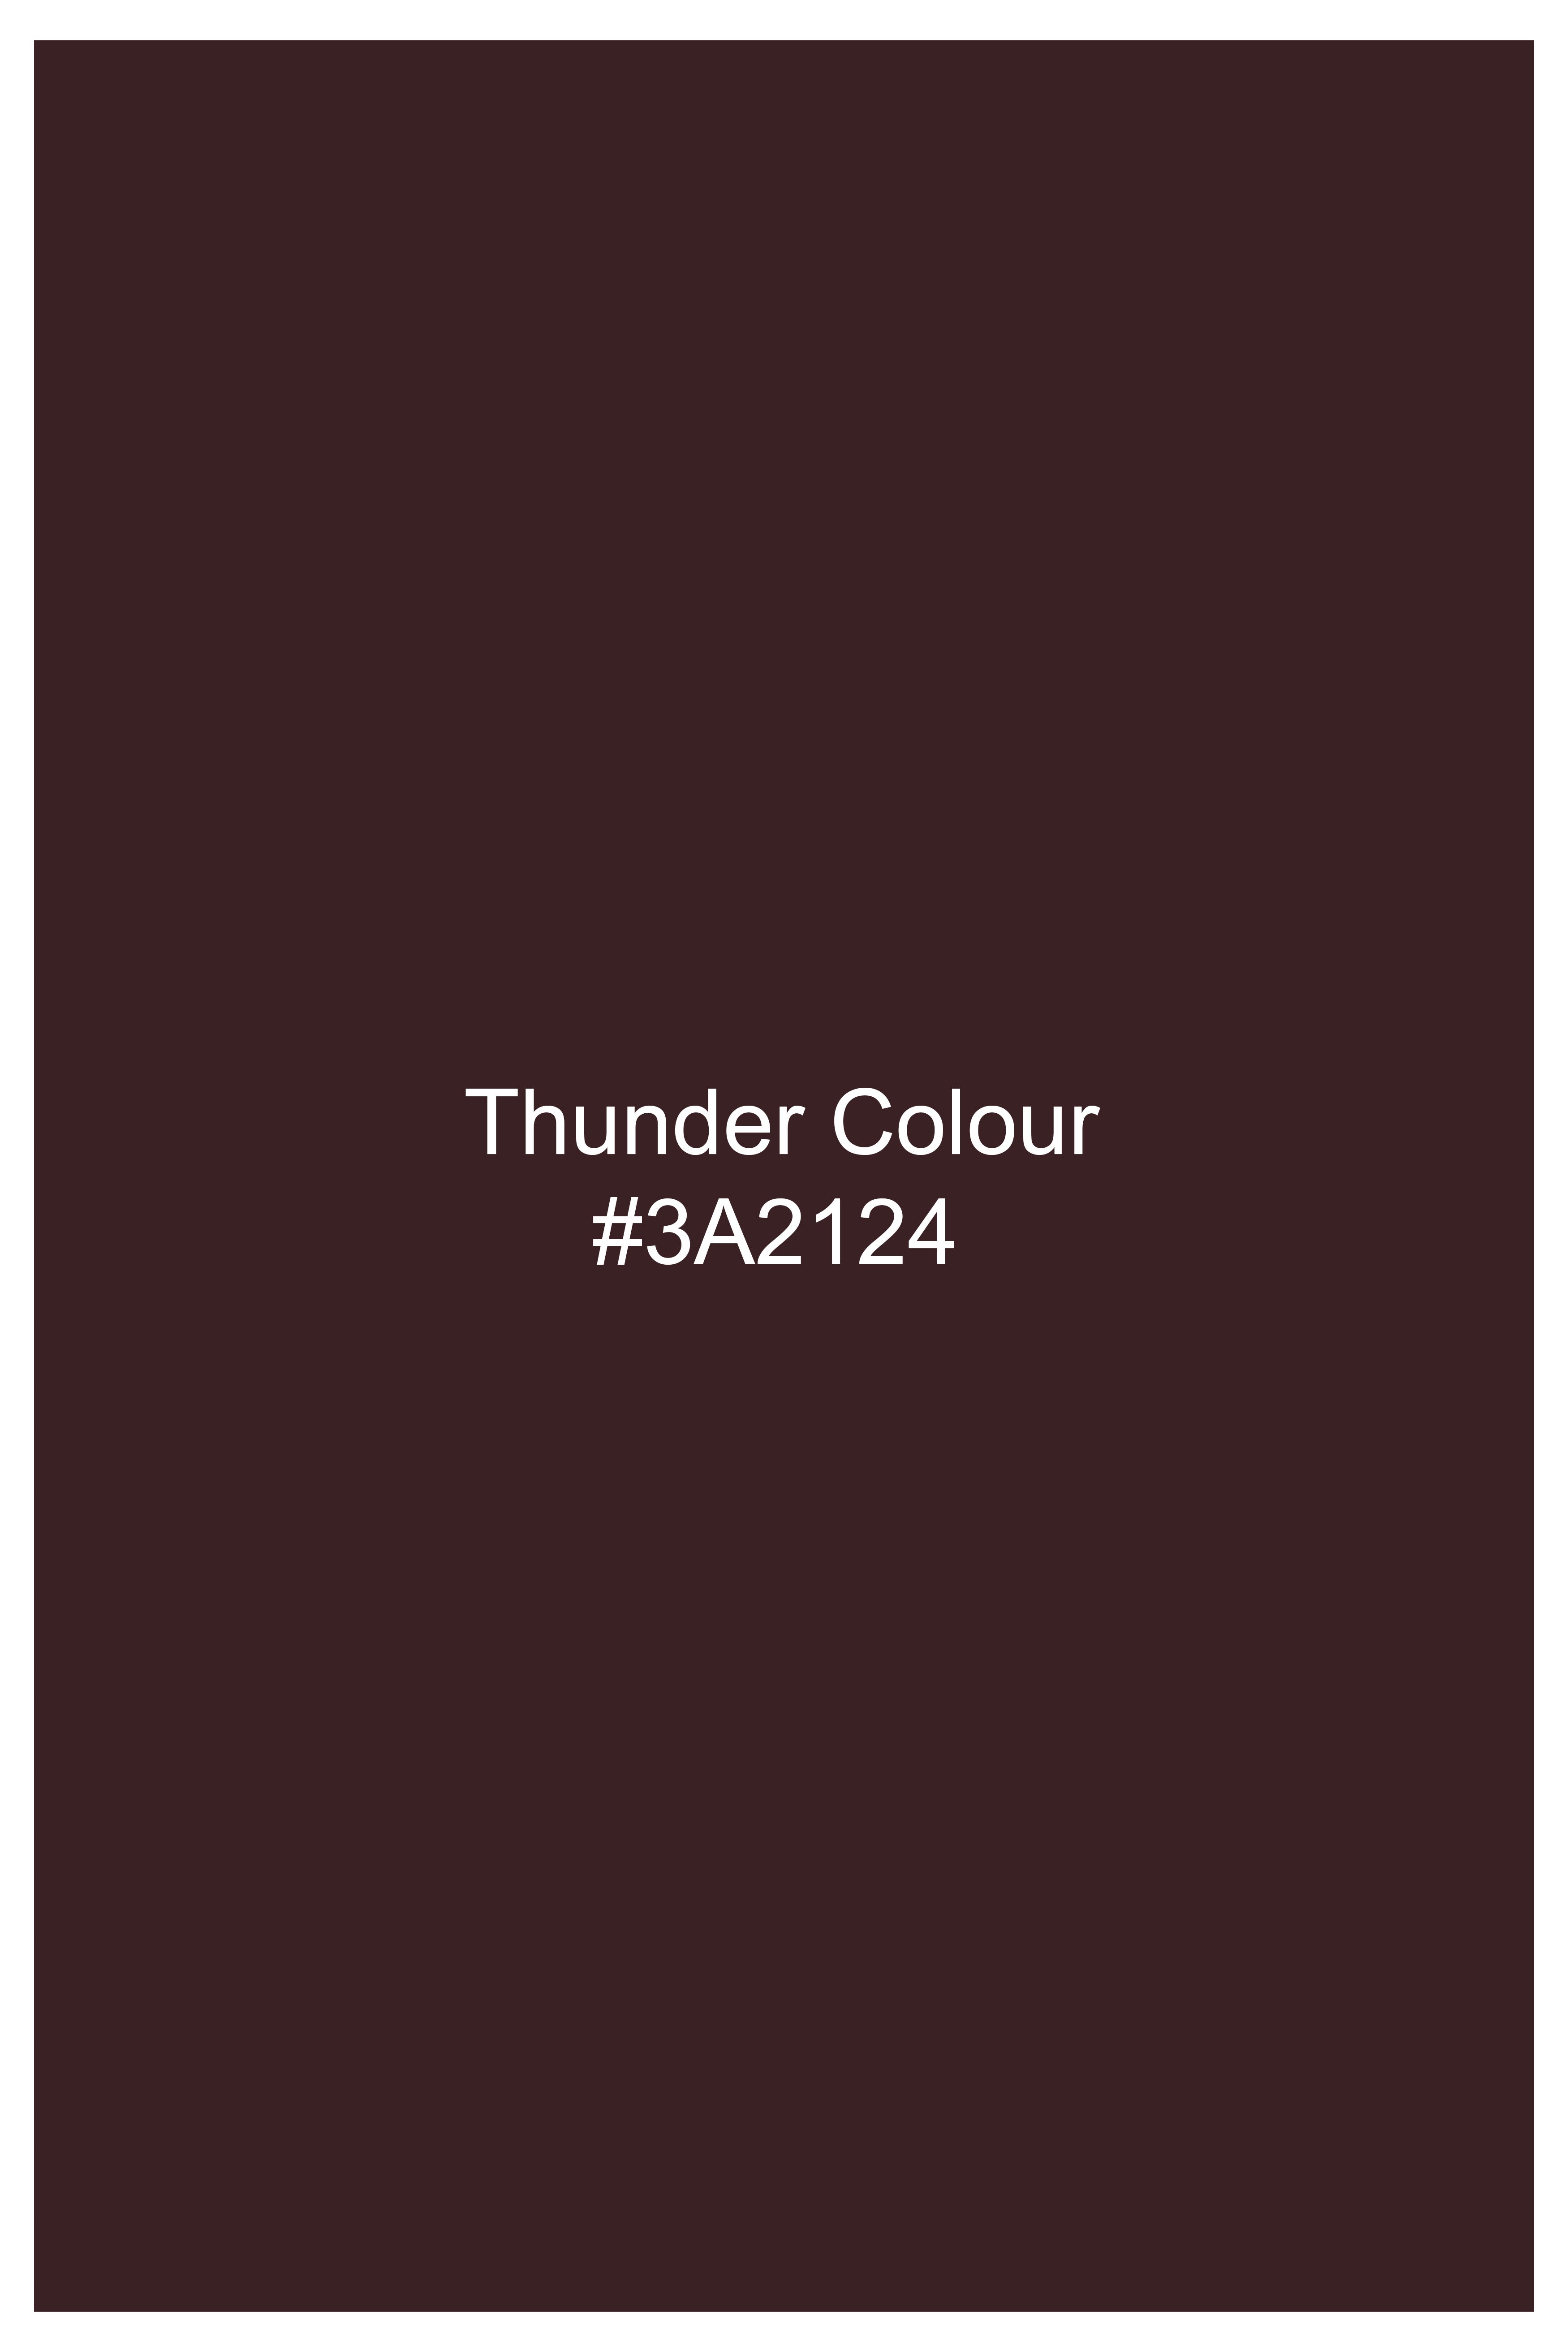 Thunder Brown Wool Rich Pant T2750-28, T2750-30, T2750-32, T2750-34, T2750-36, T2750-38, T2750-40, T2750-42, T2750-44